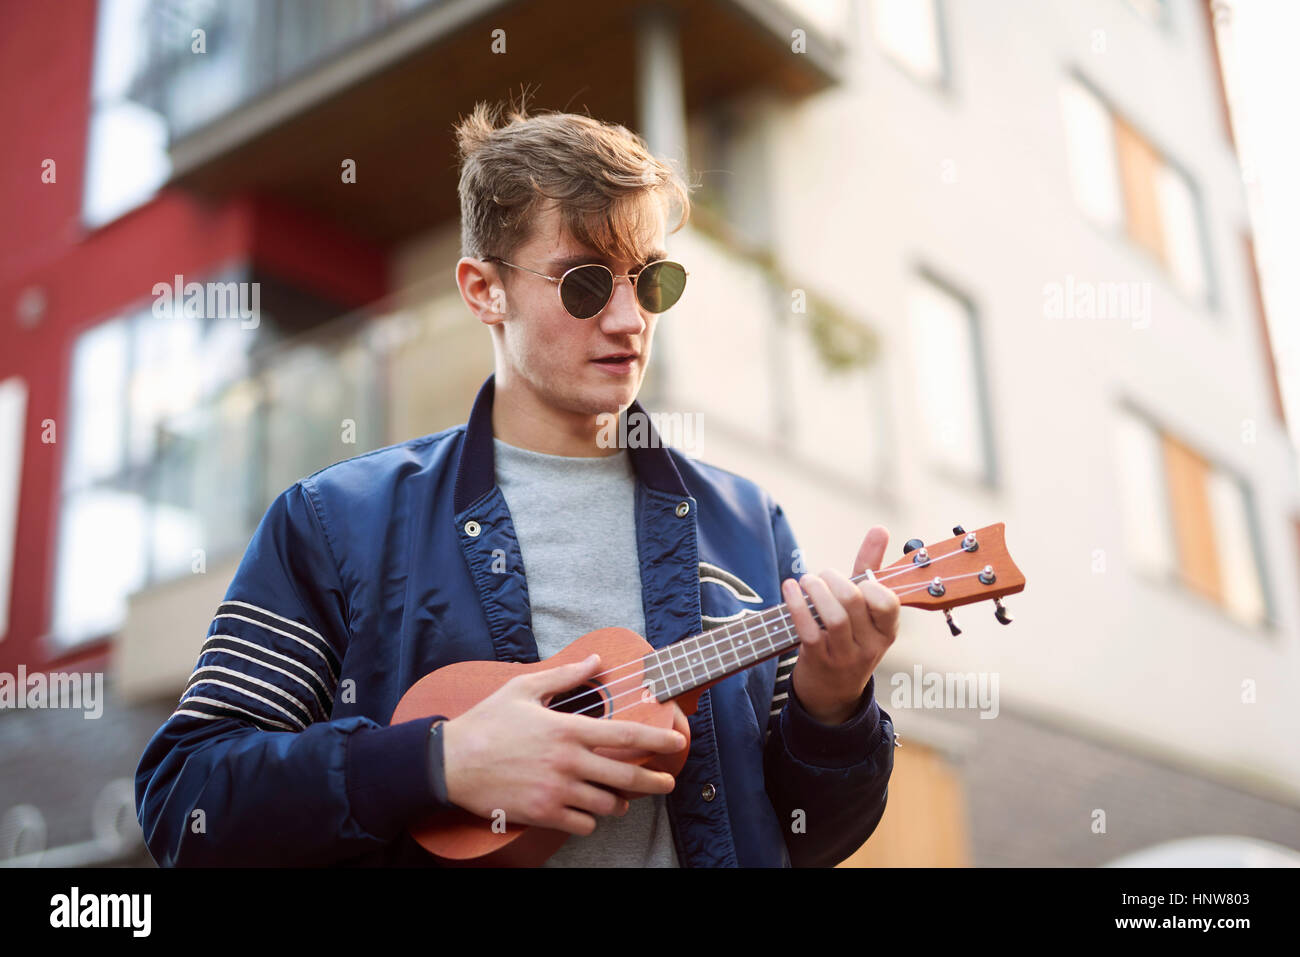 Young man on playing ukulele Stock Photo